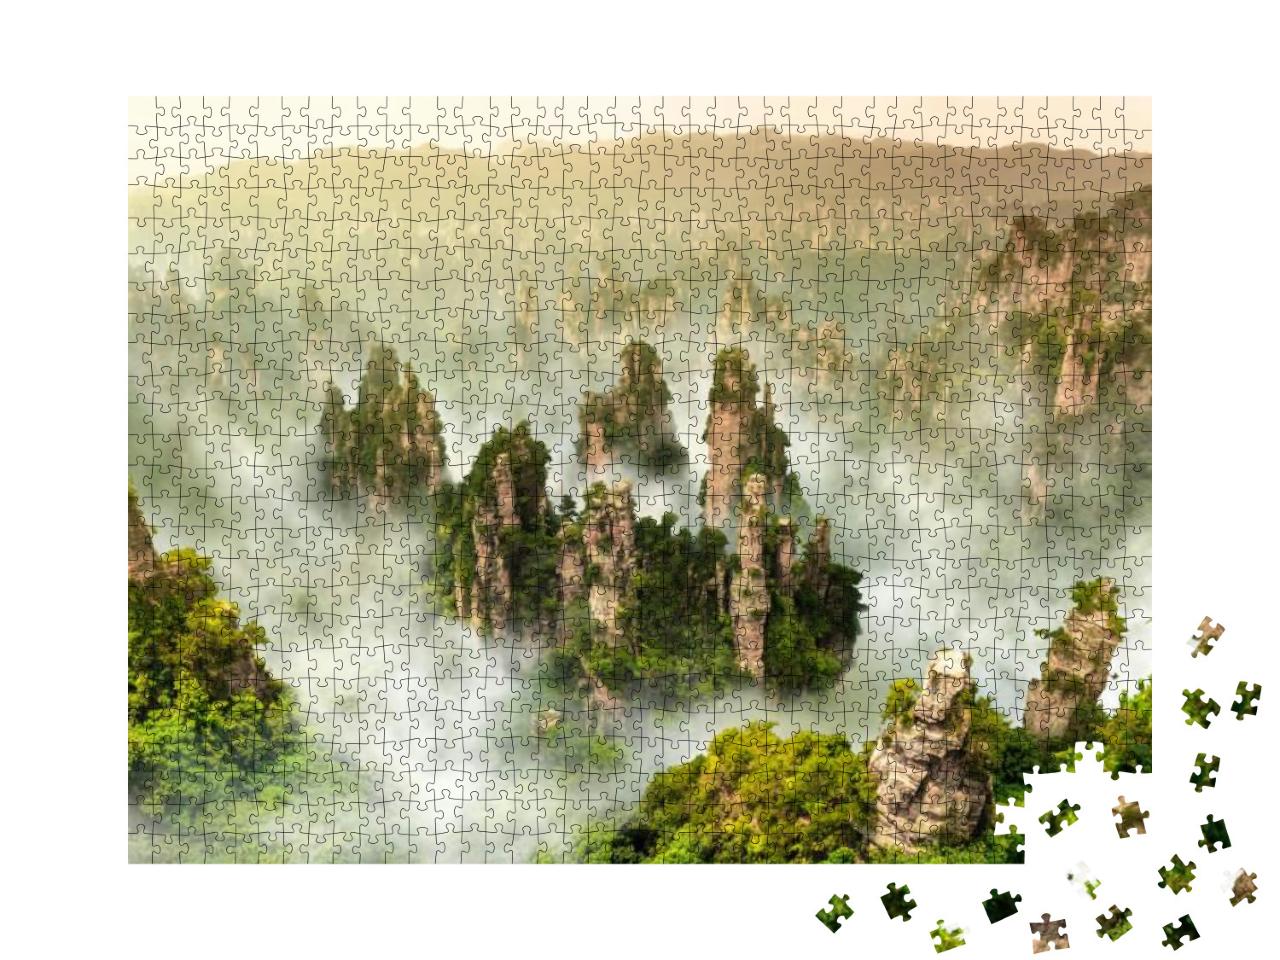 Zhangjiajie Cliff Mountain At Wulingyuan Hunan China... Jigsaw Puzzle with 1000 pieces